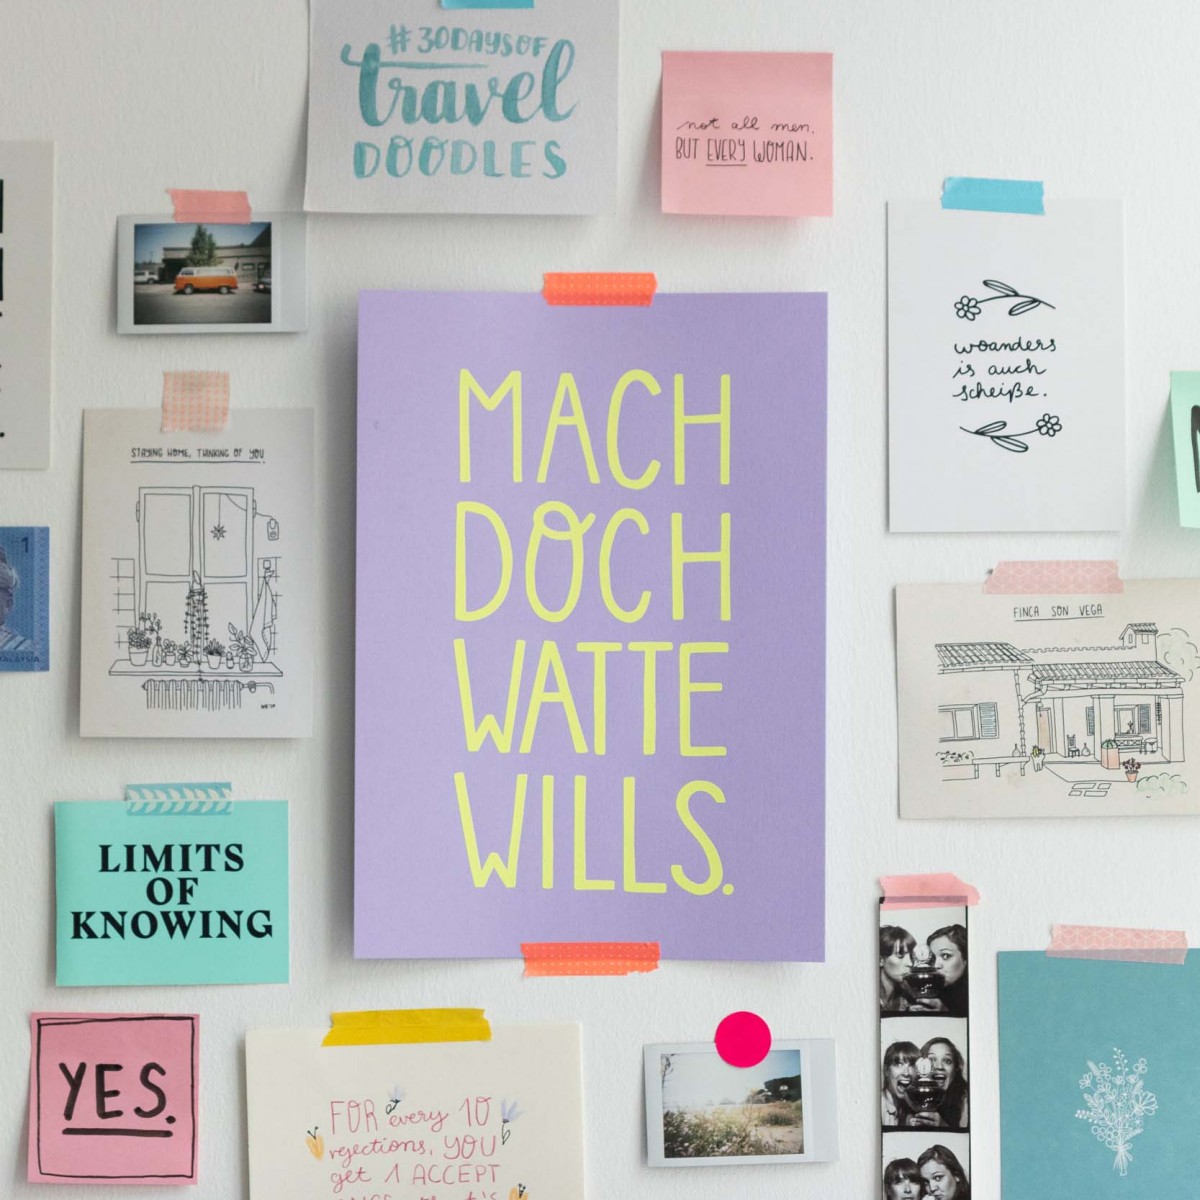 Limited Edition Siebdruck "Mach doch watte wills" - SMARACUJA